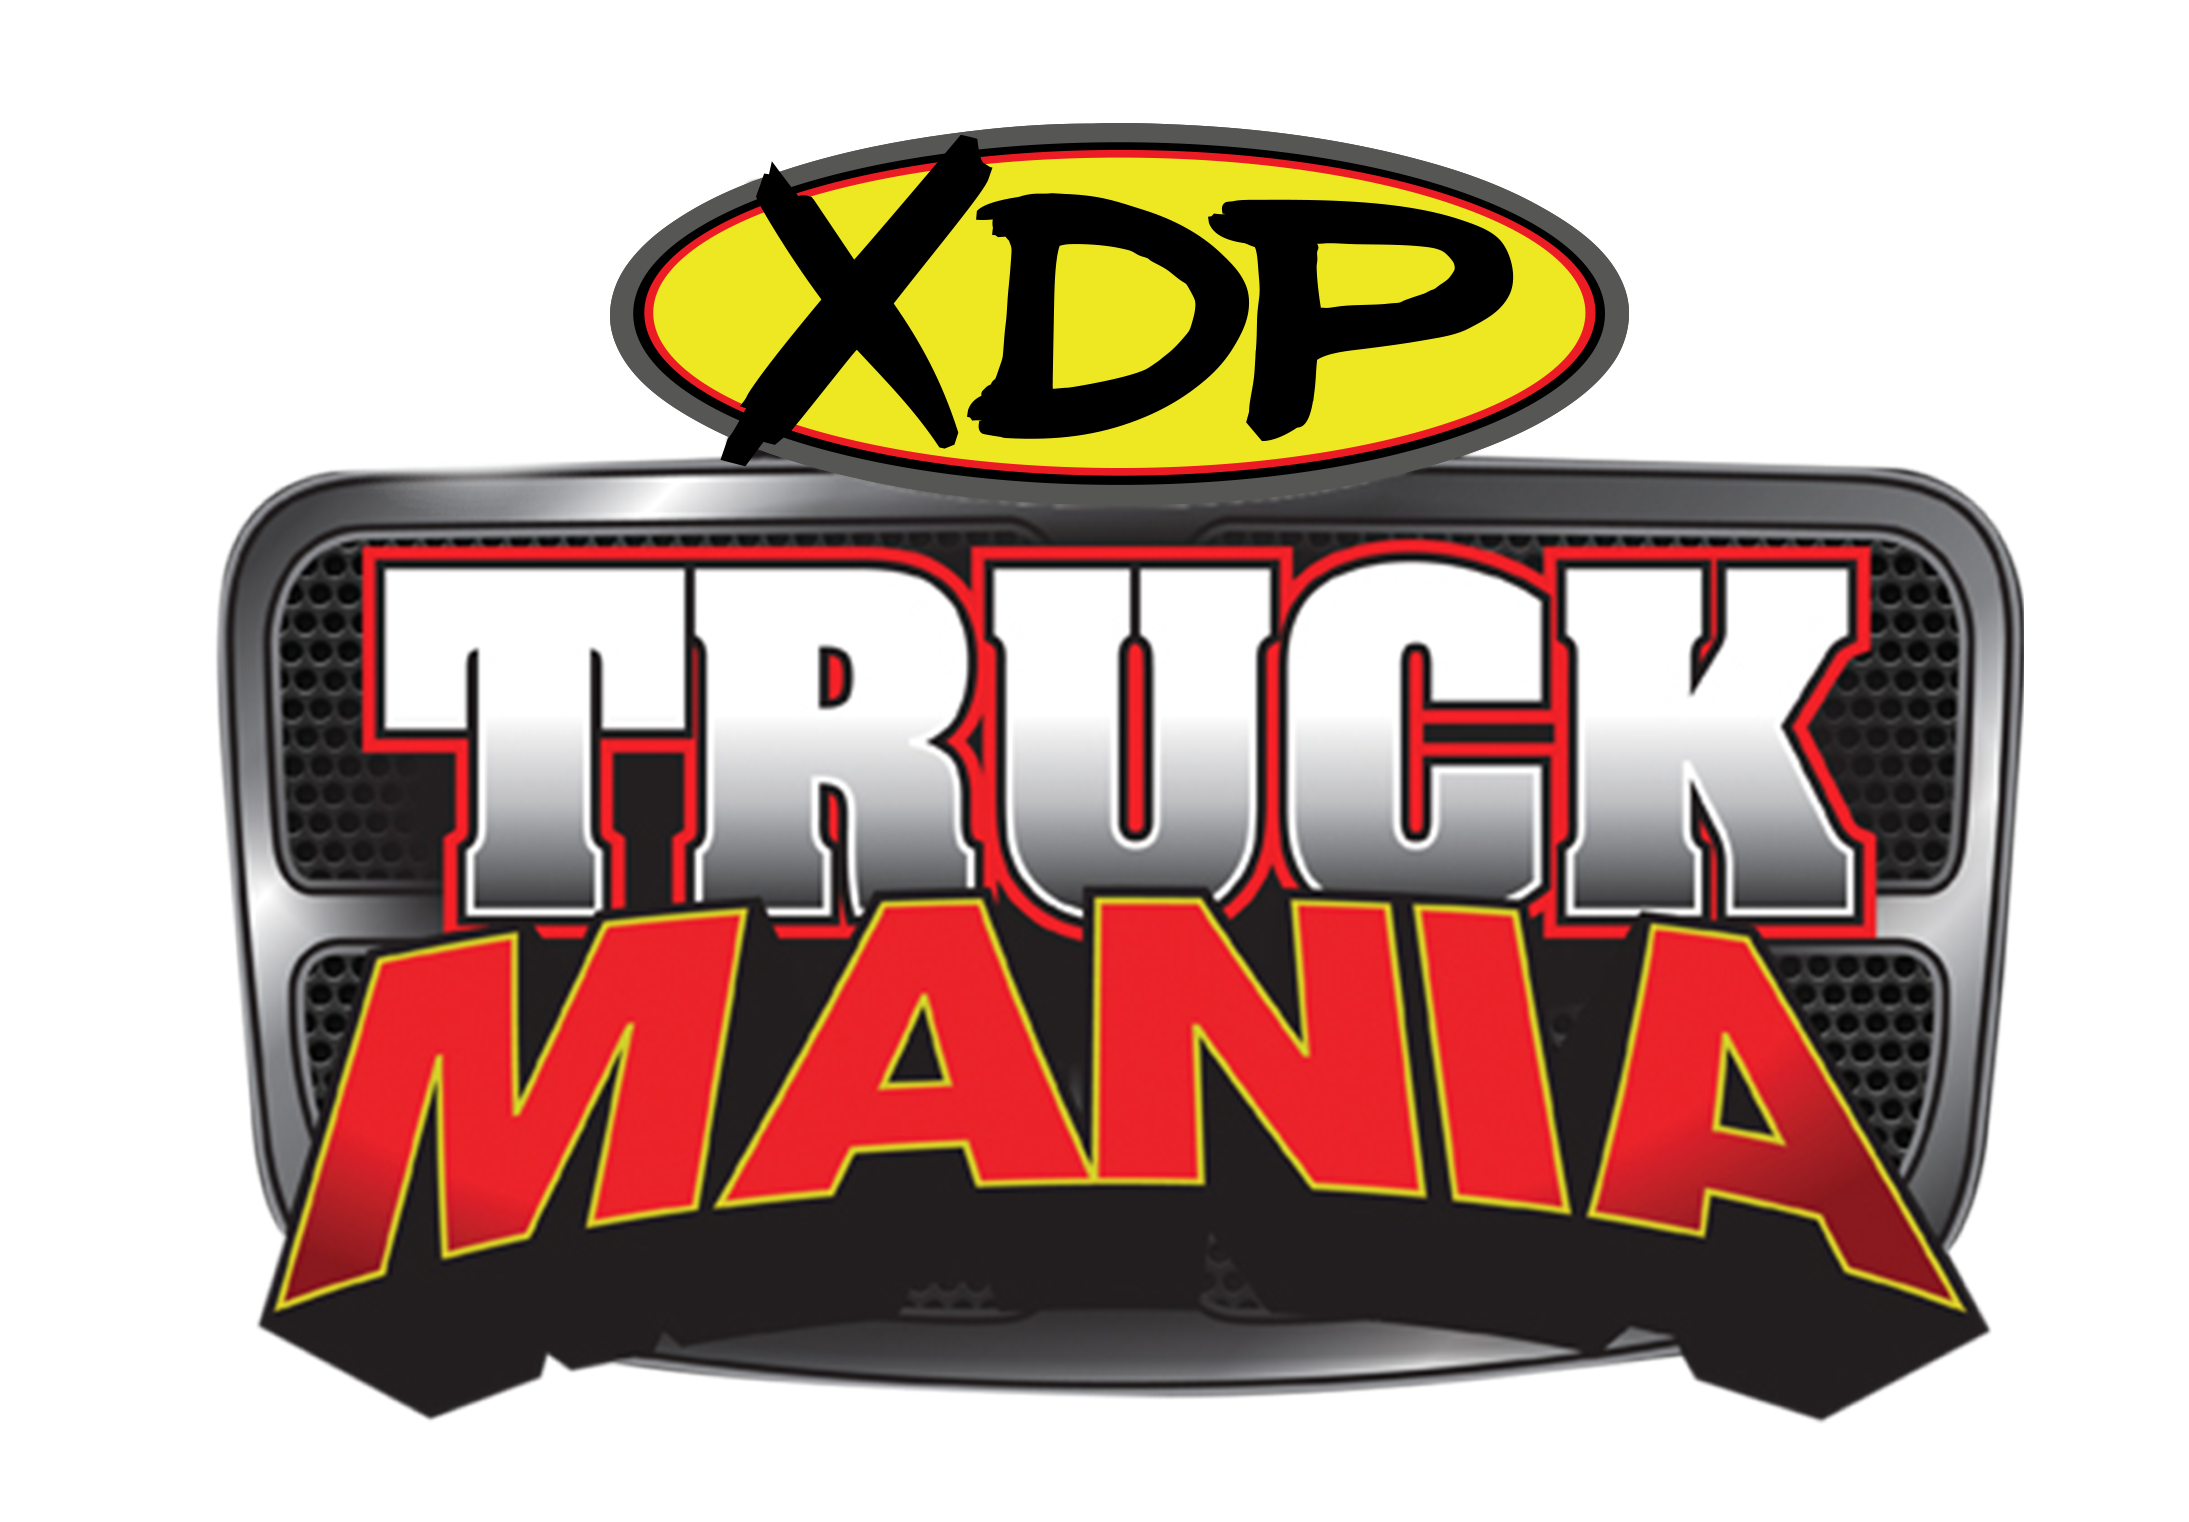 30th Annual XDP Truck Mania